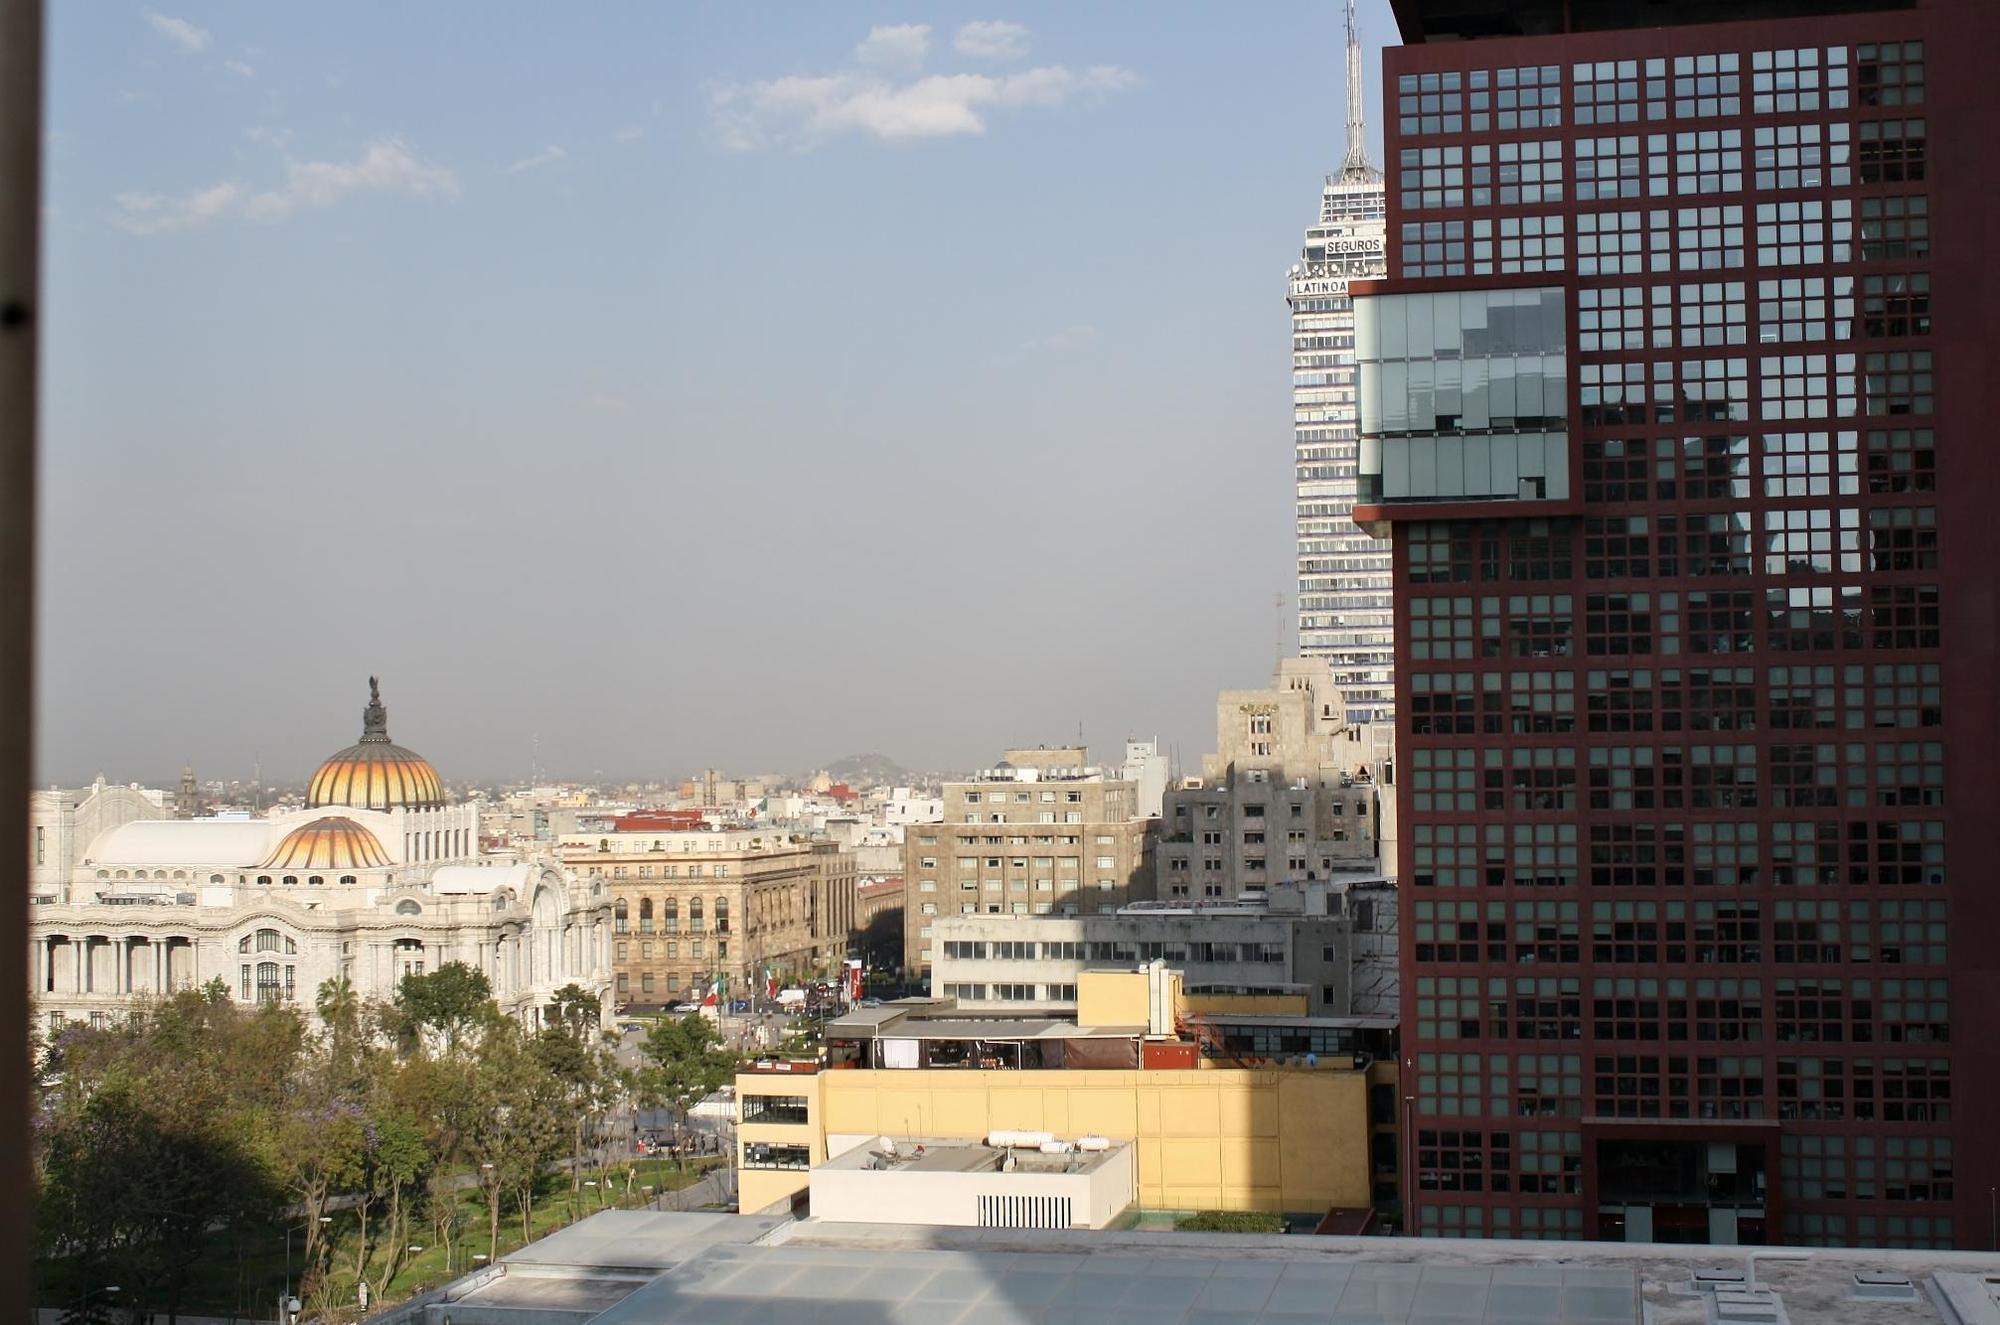 Hotel San Francisco Centro Historico Mexico City Exterior photo